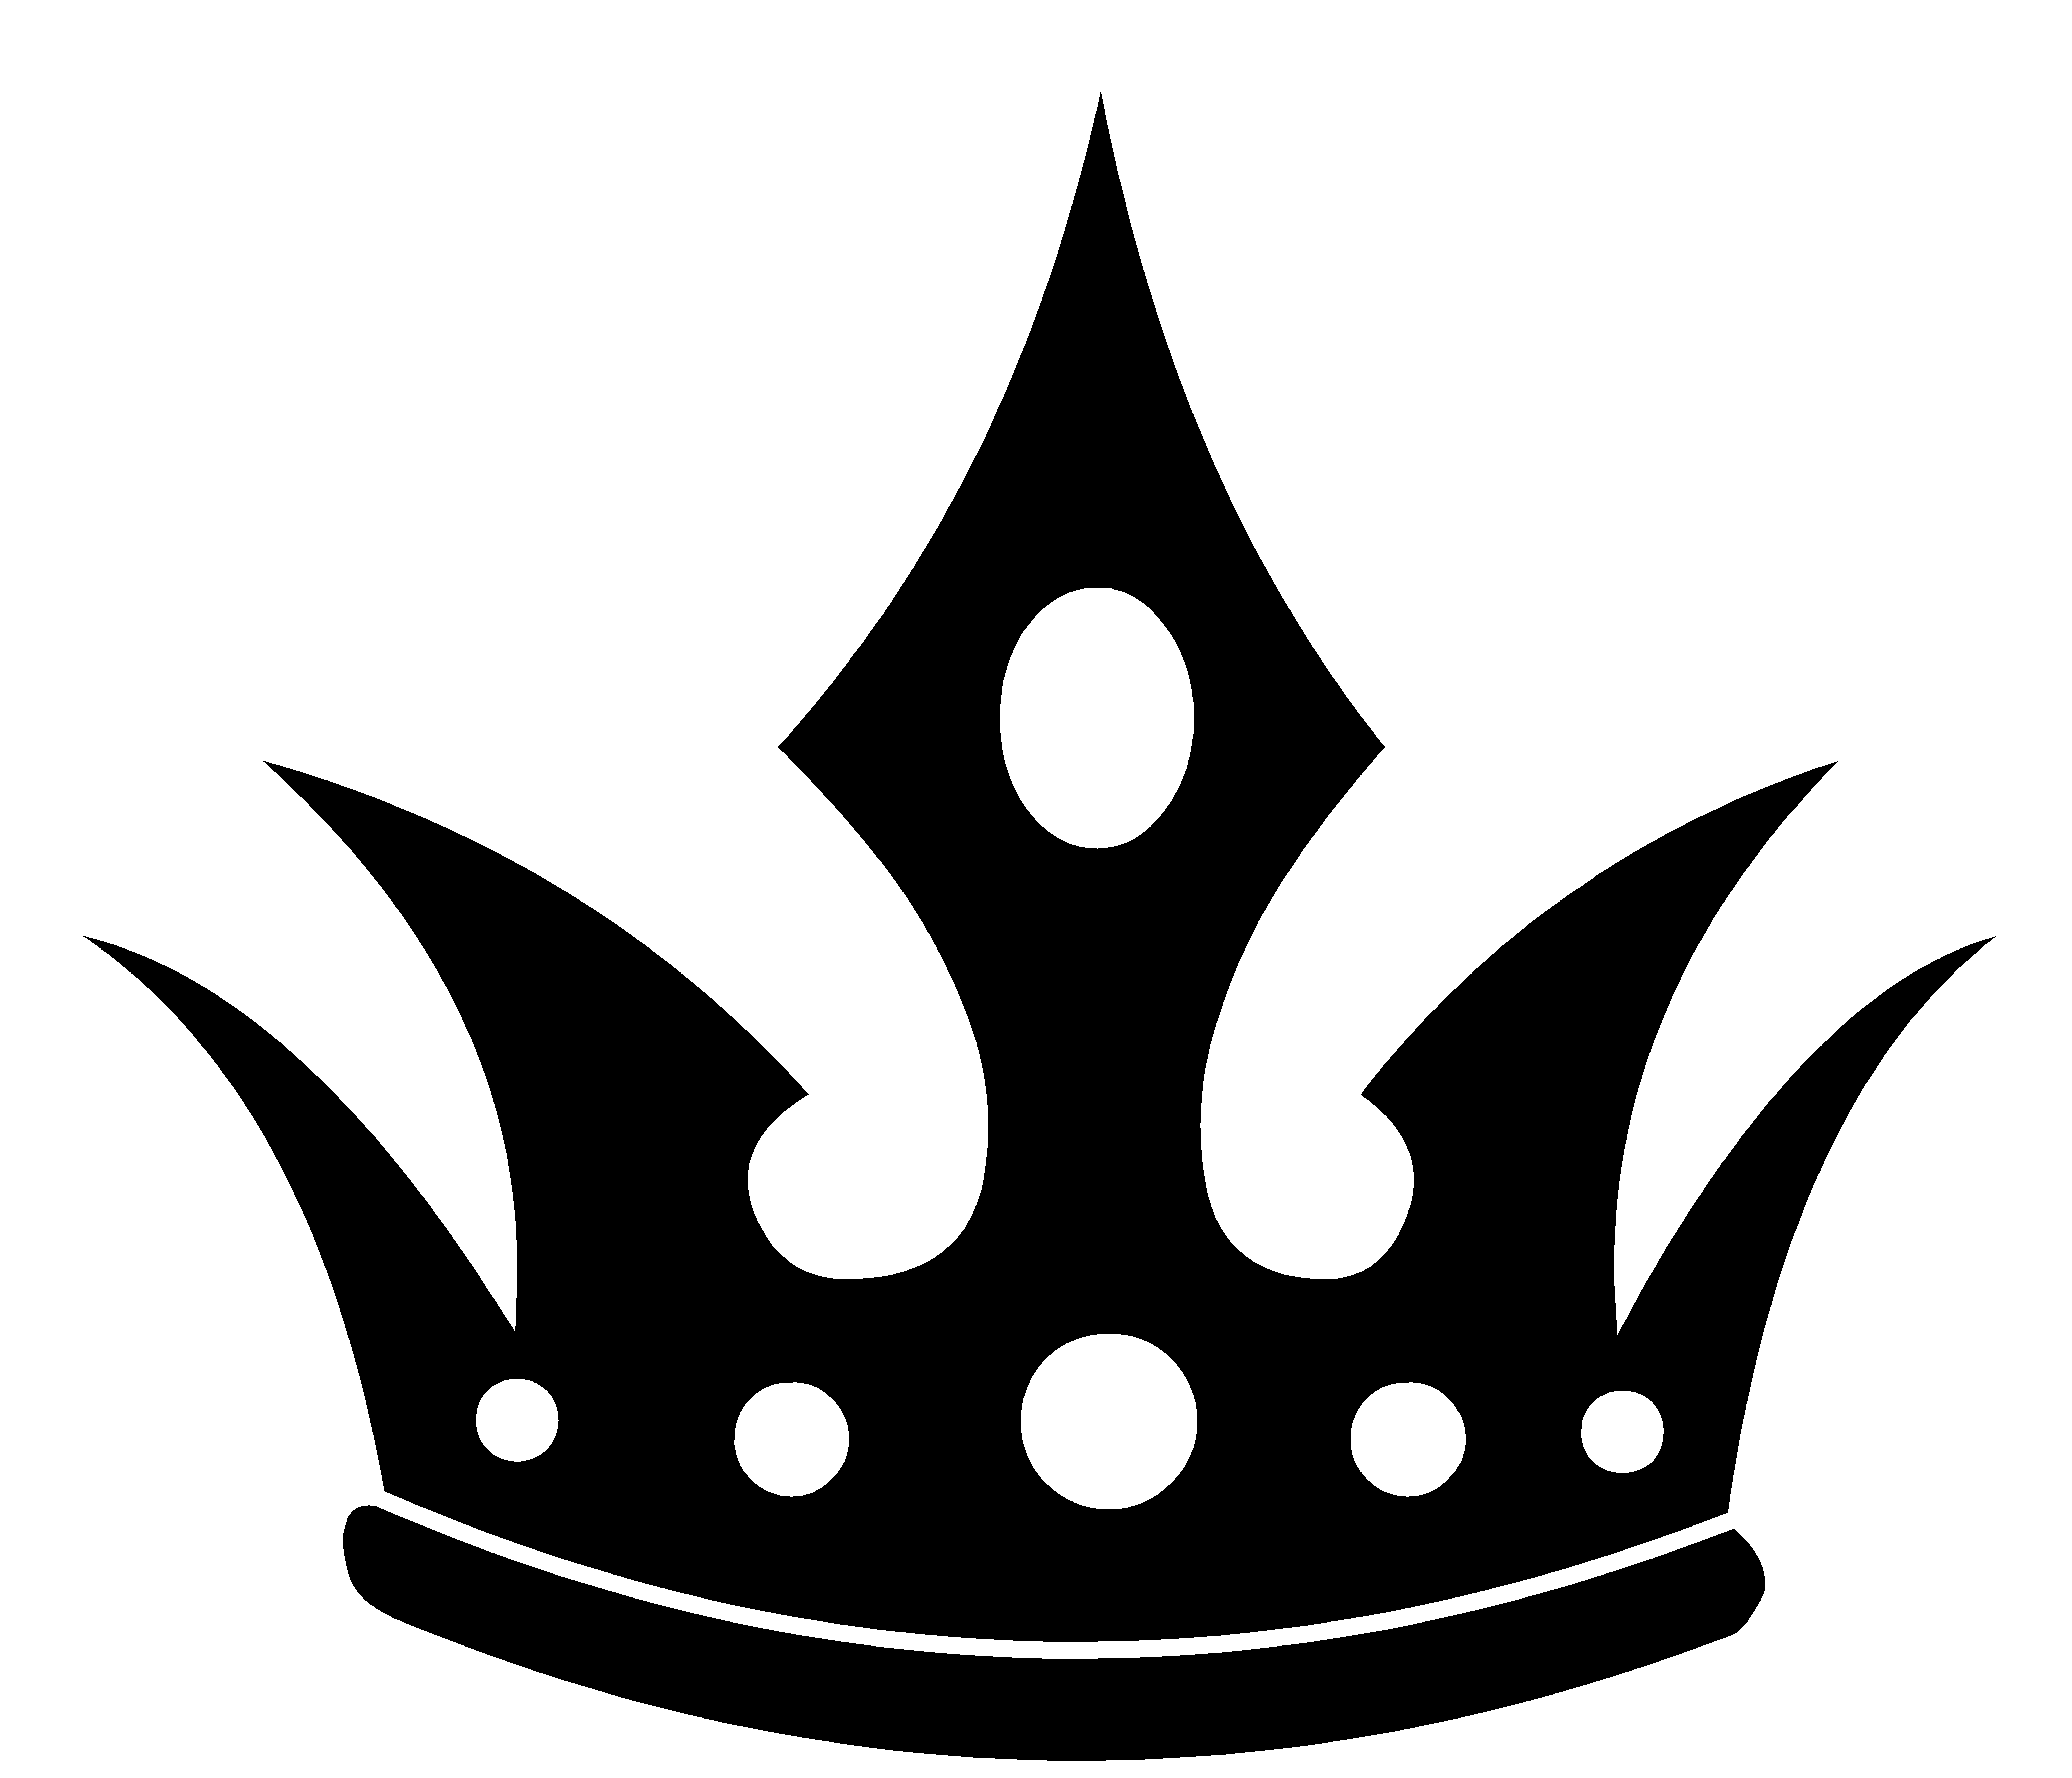 King Crown Logo - Free King Crown Logo, Download Free Clip Art, Free Clip Art on ...